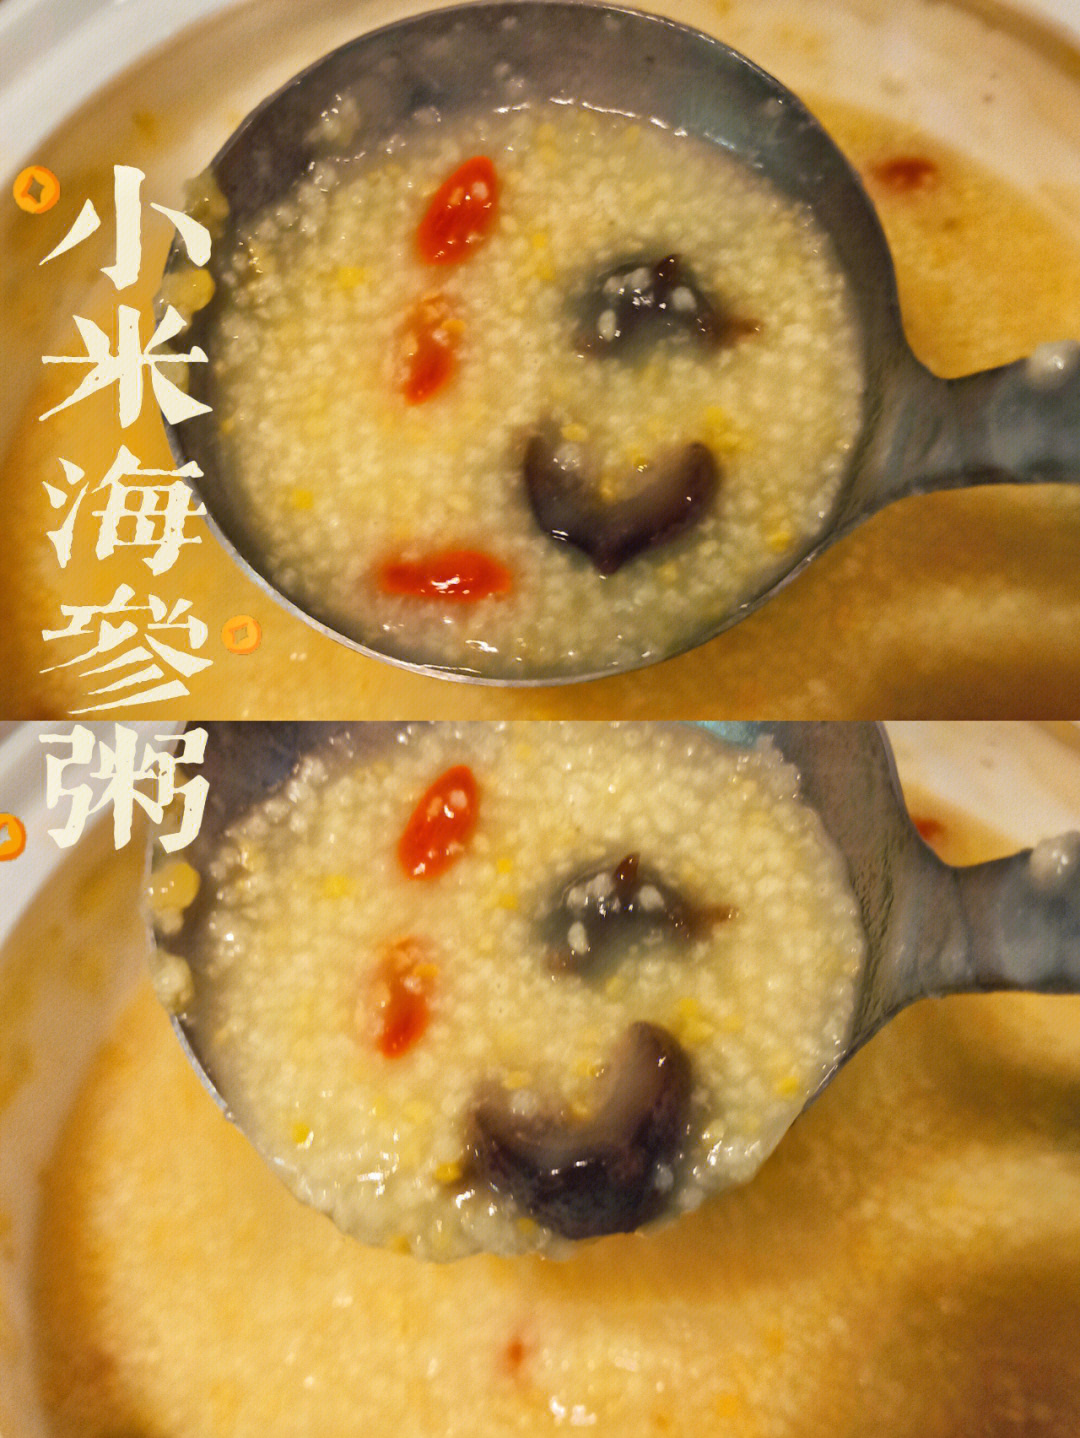 海参小米粥的正确做法